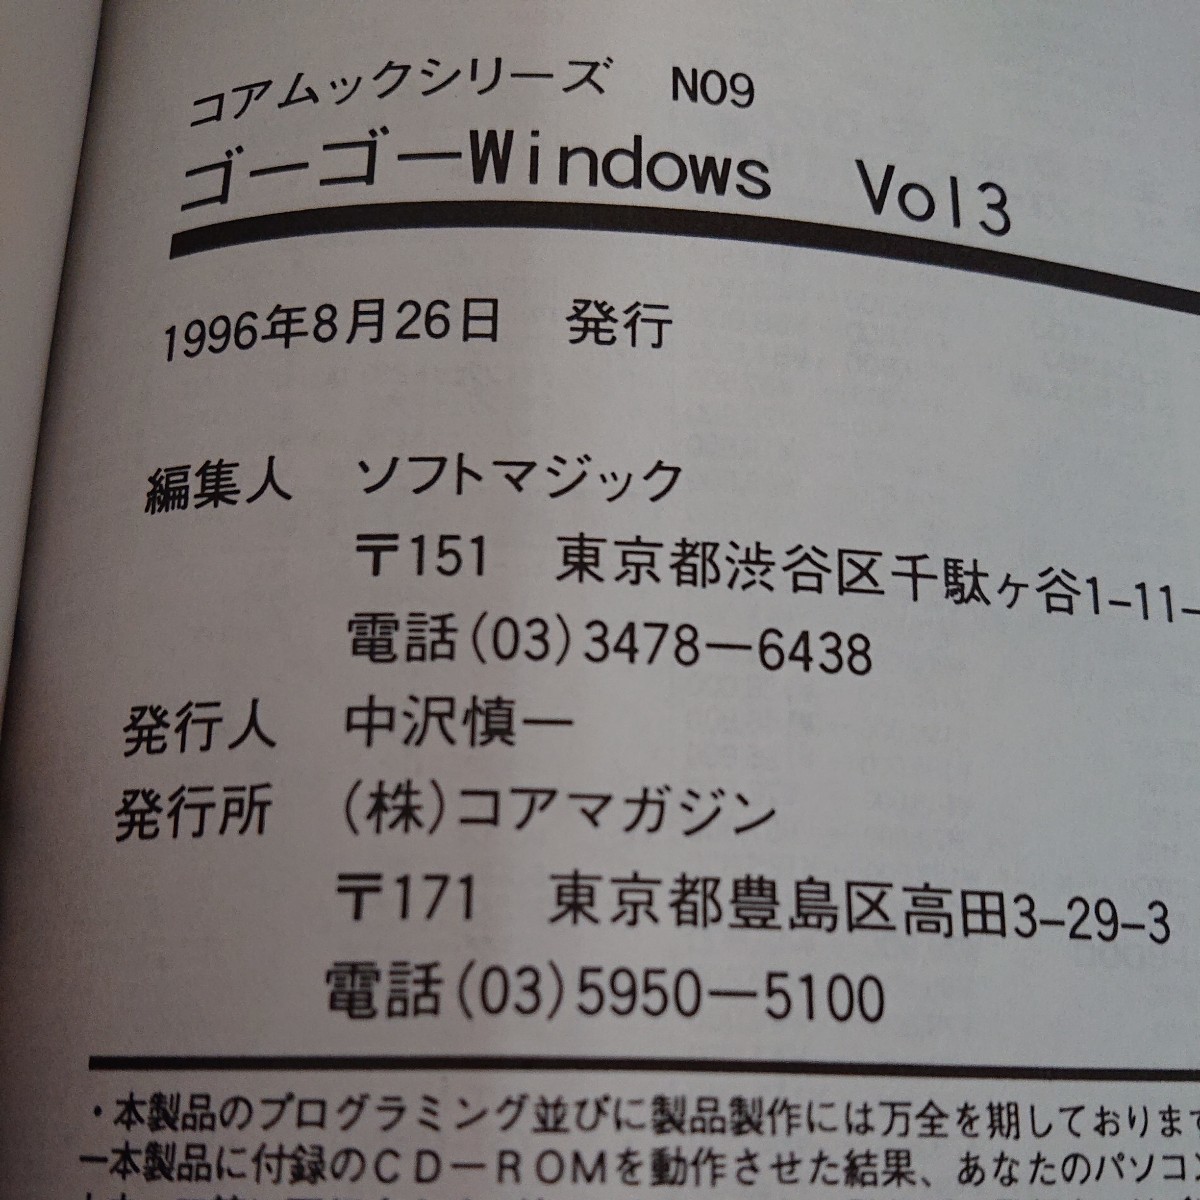 h-534 ゴーゴー!! Windows コアムックシリーズ CD付き 拡大ビュアーがさらにバージョンアップ! 1996年発行※9 の画像7